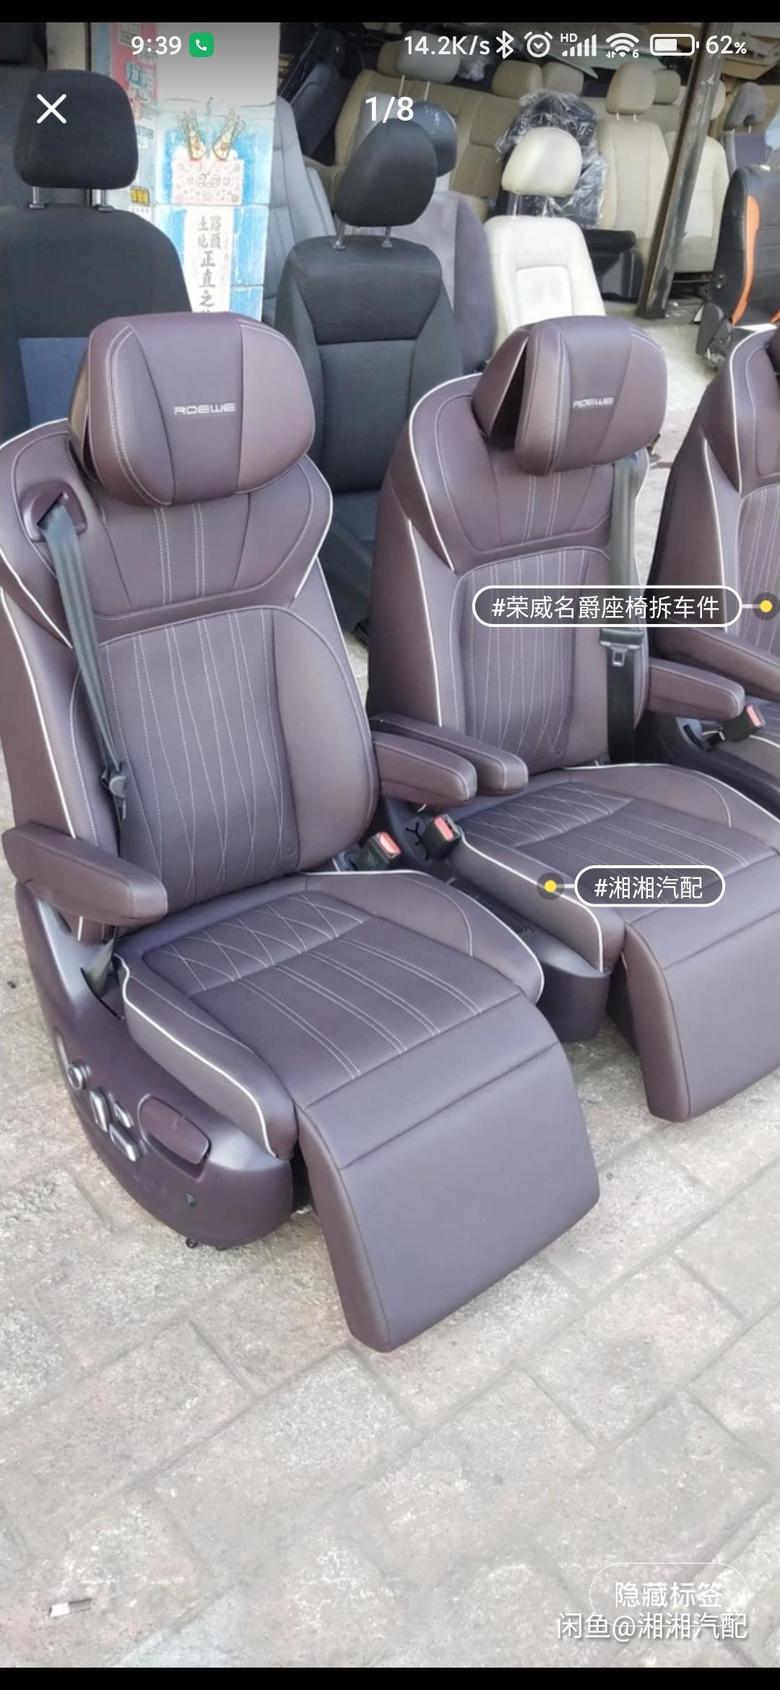 荣威imax8圈里不知道有没有人改了座椅要出的，想买一对中排座椅改来自己用，带腿拖和通风的